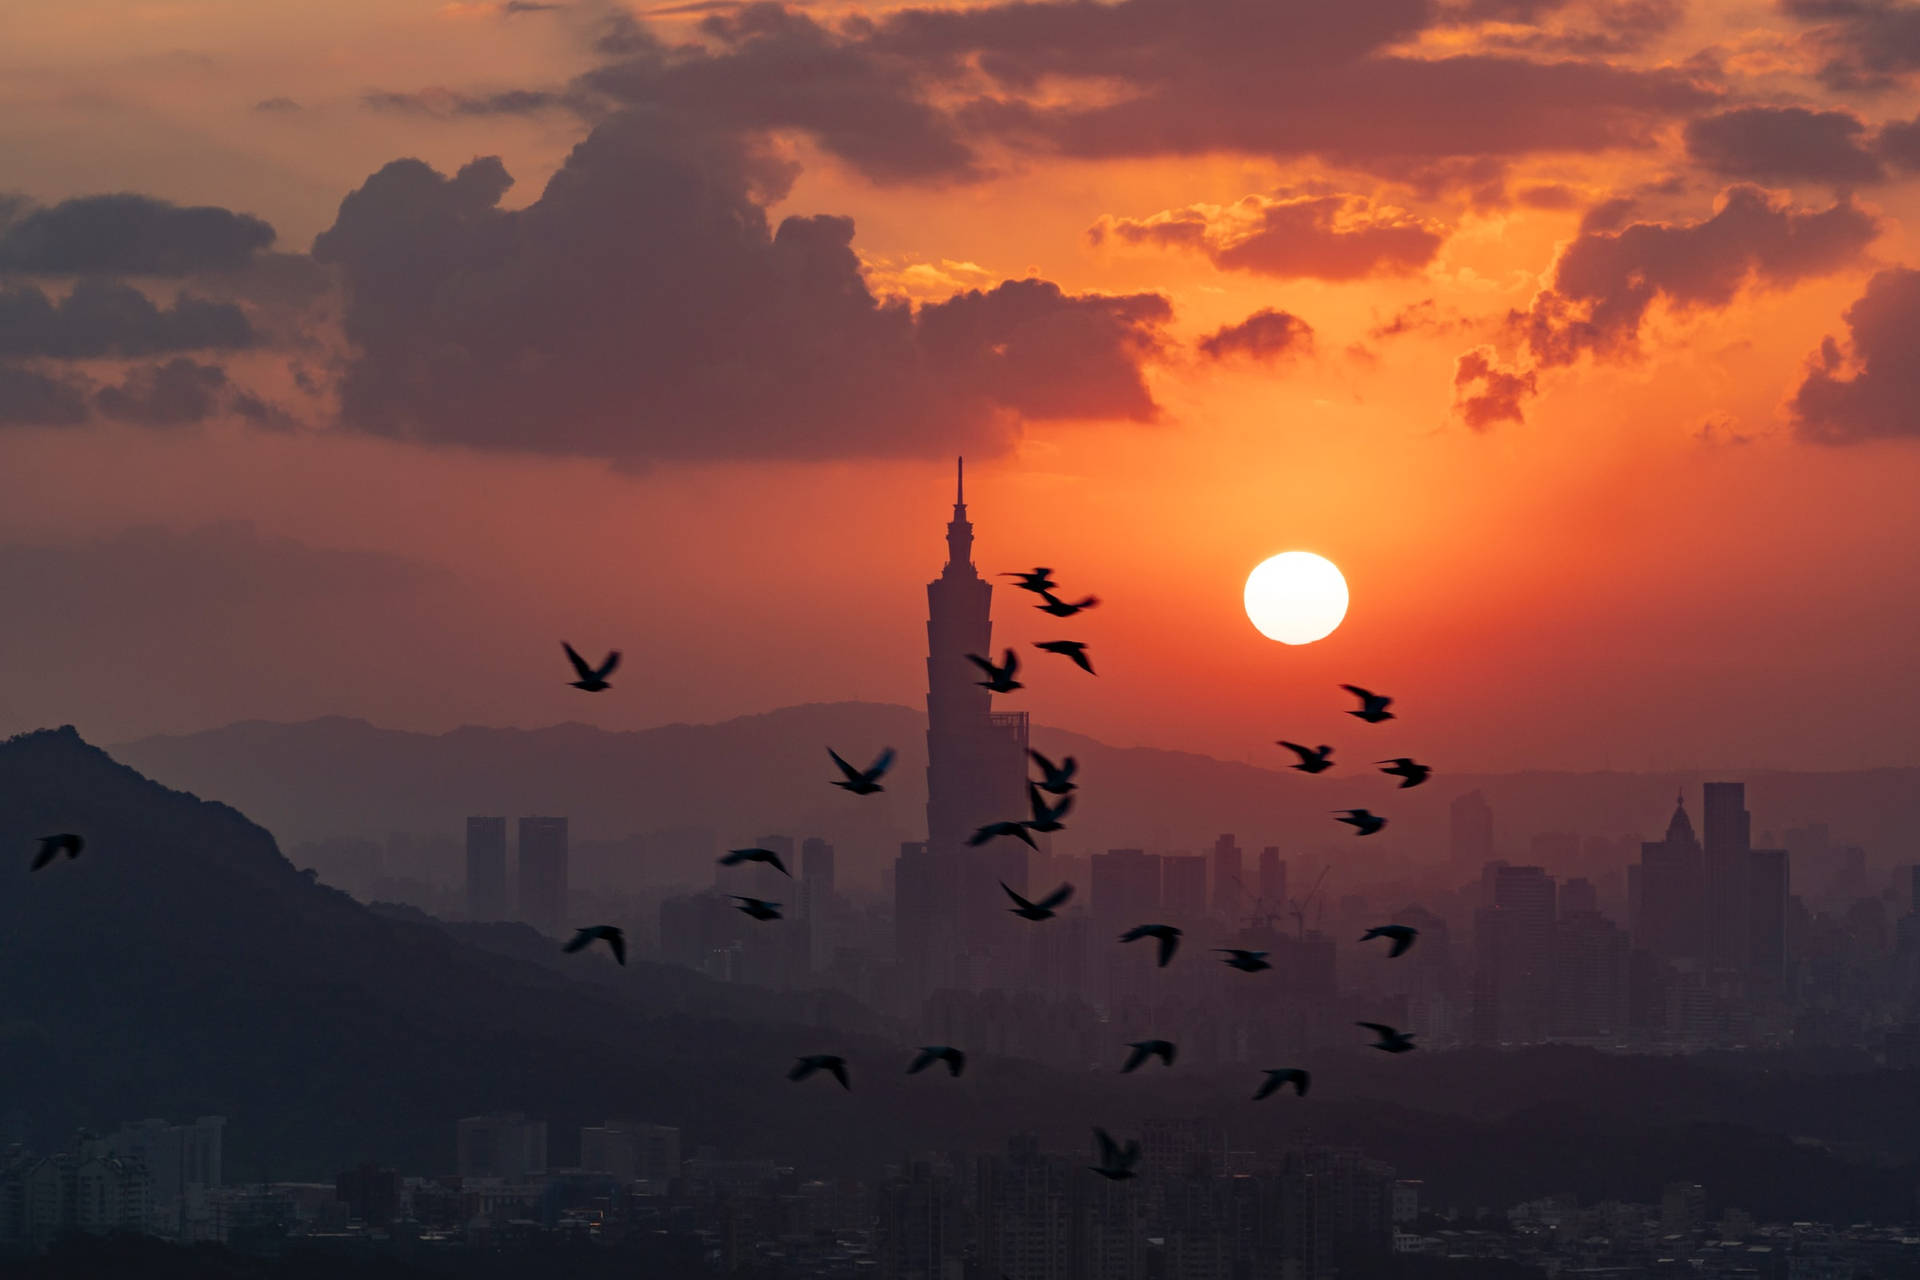 Taipei Sunset And Birds